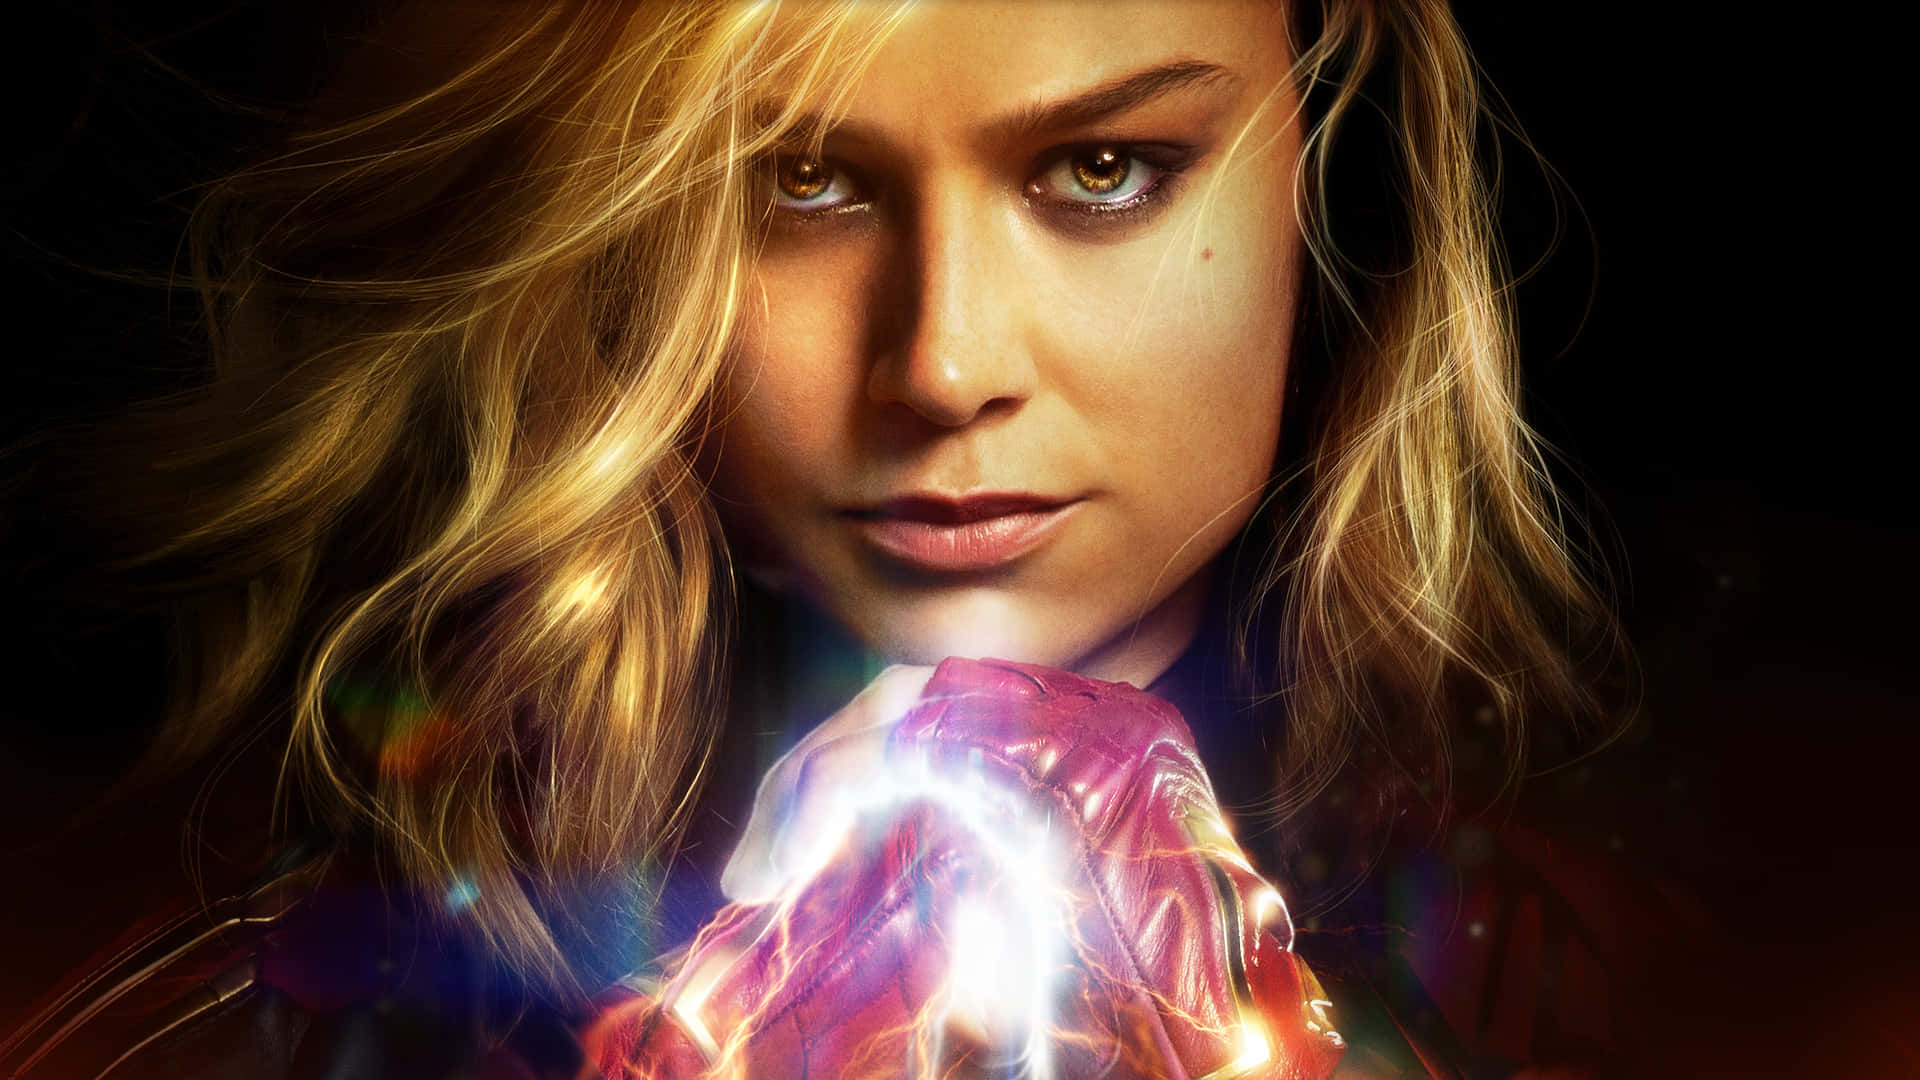 Brielarson Spelar Rollen Som Carol Danvers I Marvels Megahit 2019, Captain Marvel. Wallpaper